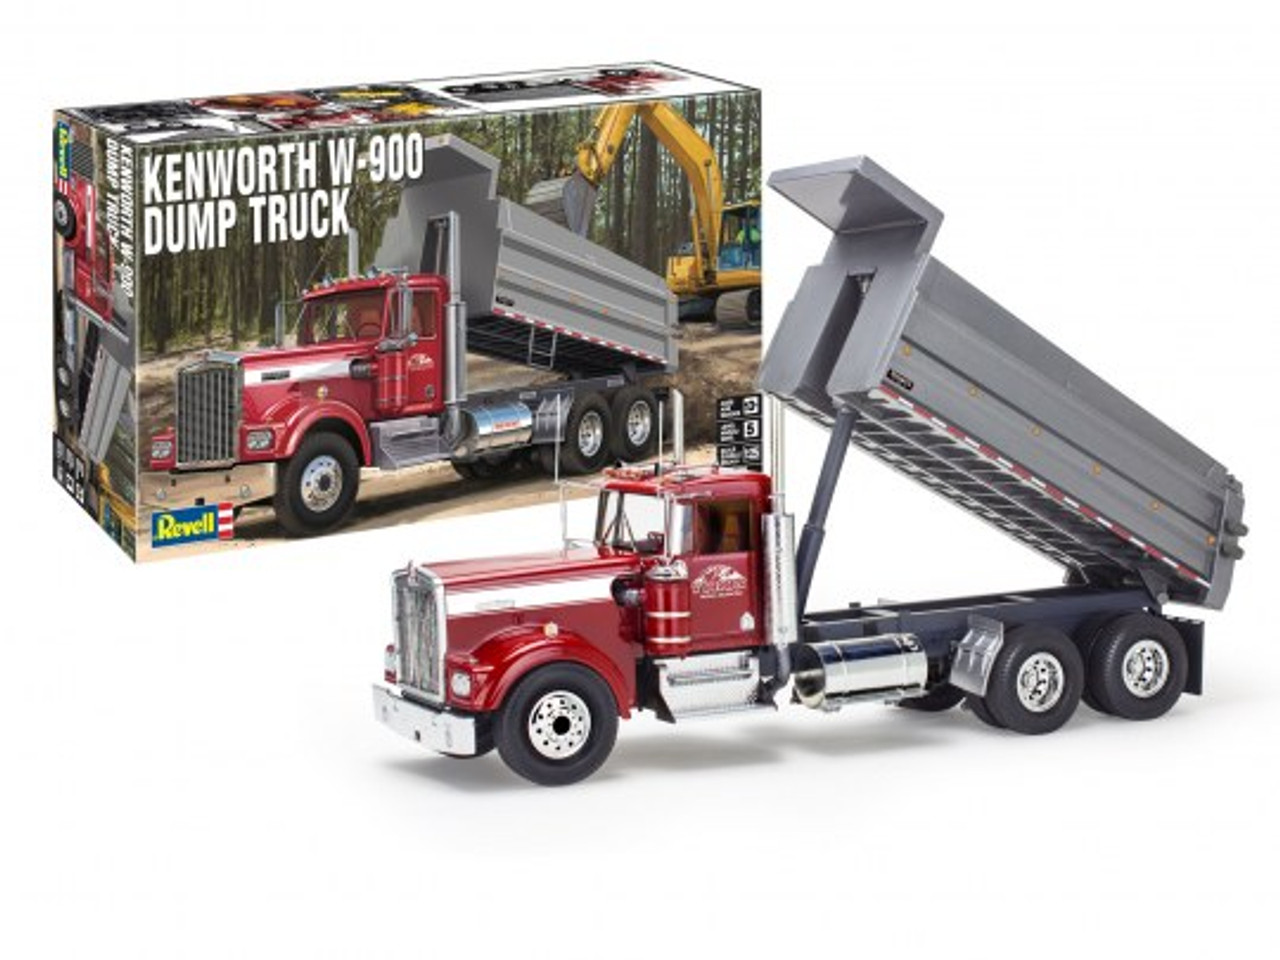 Revell 12628 1/25 Kenworth W-900 Dump Truck Model Kit Package